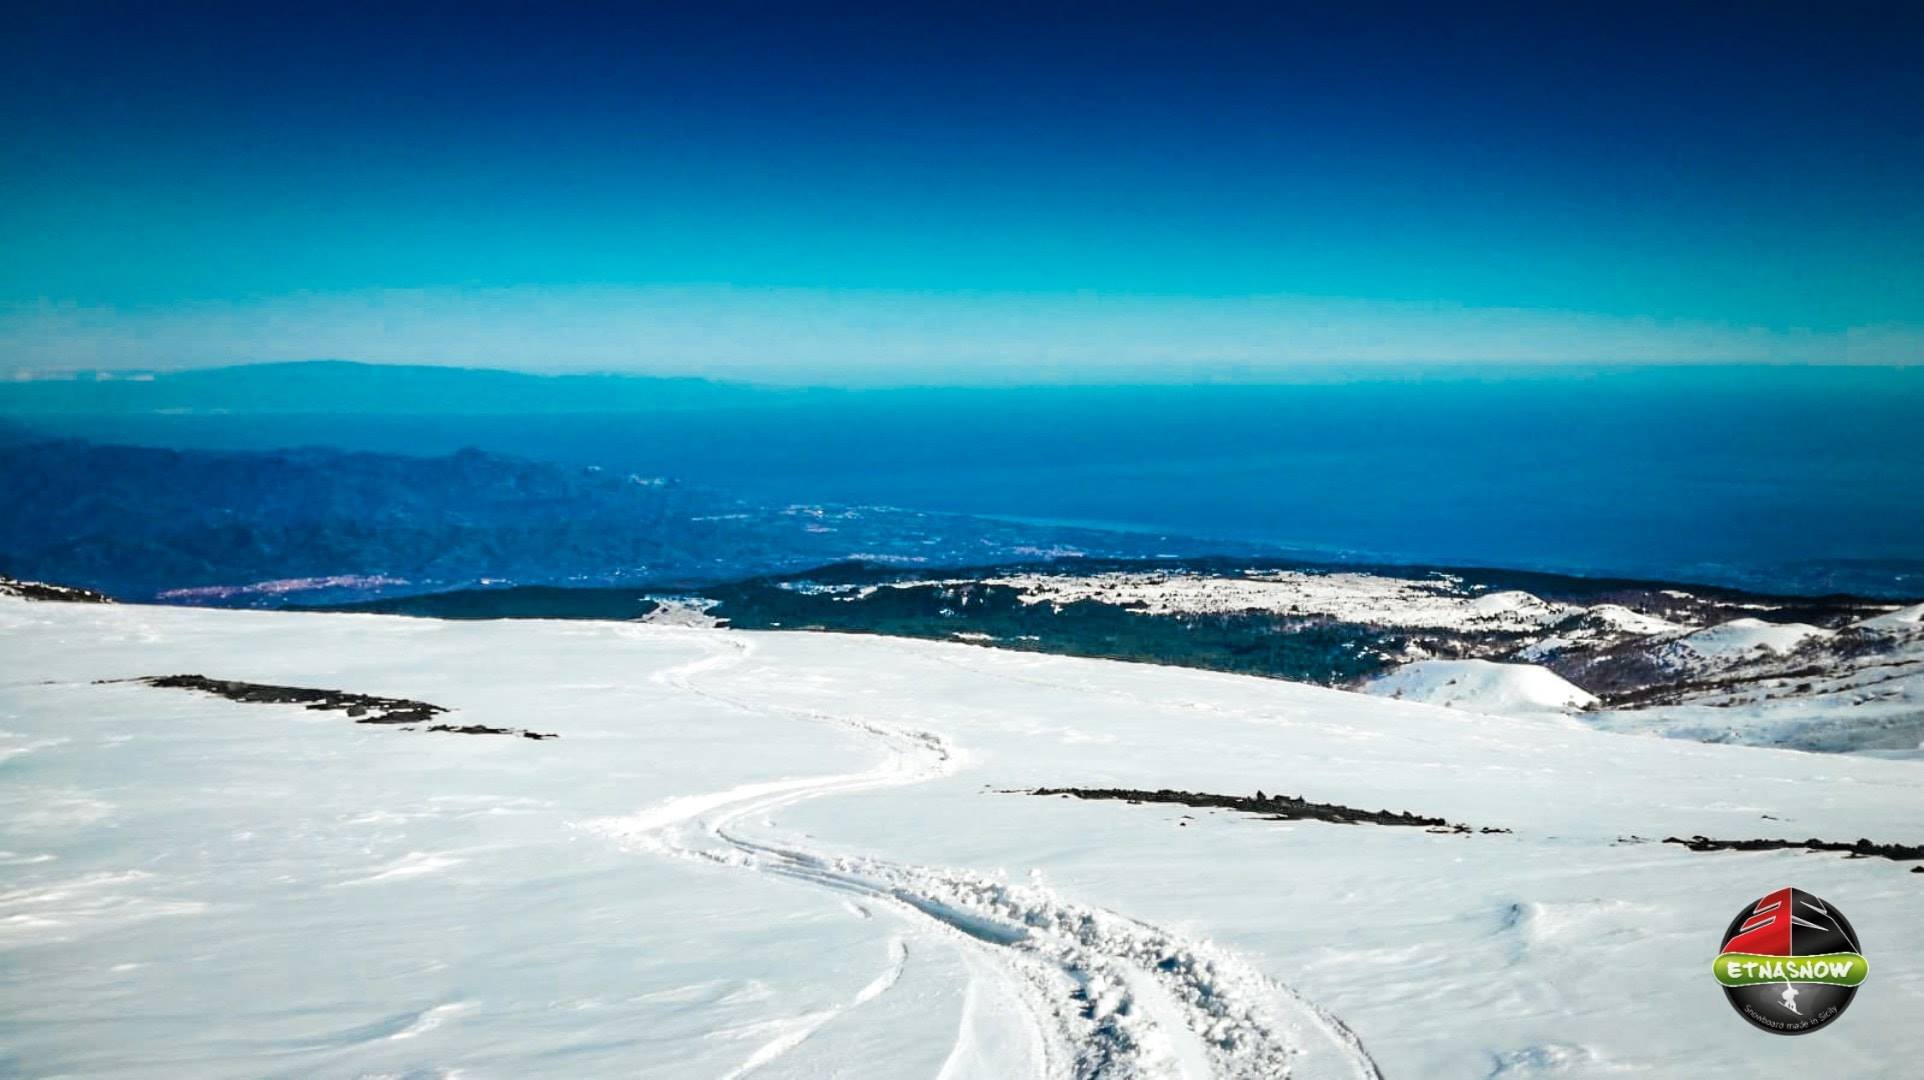 La vista del Etna cubierto de nieve en el lado norte - Invierno 2019